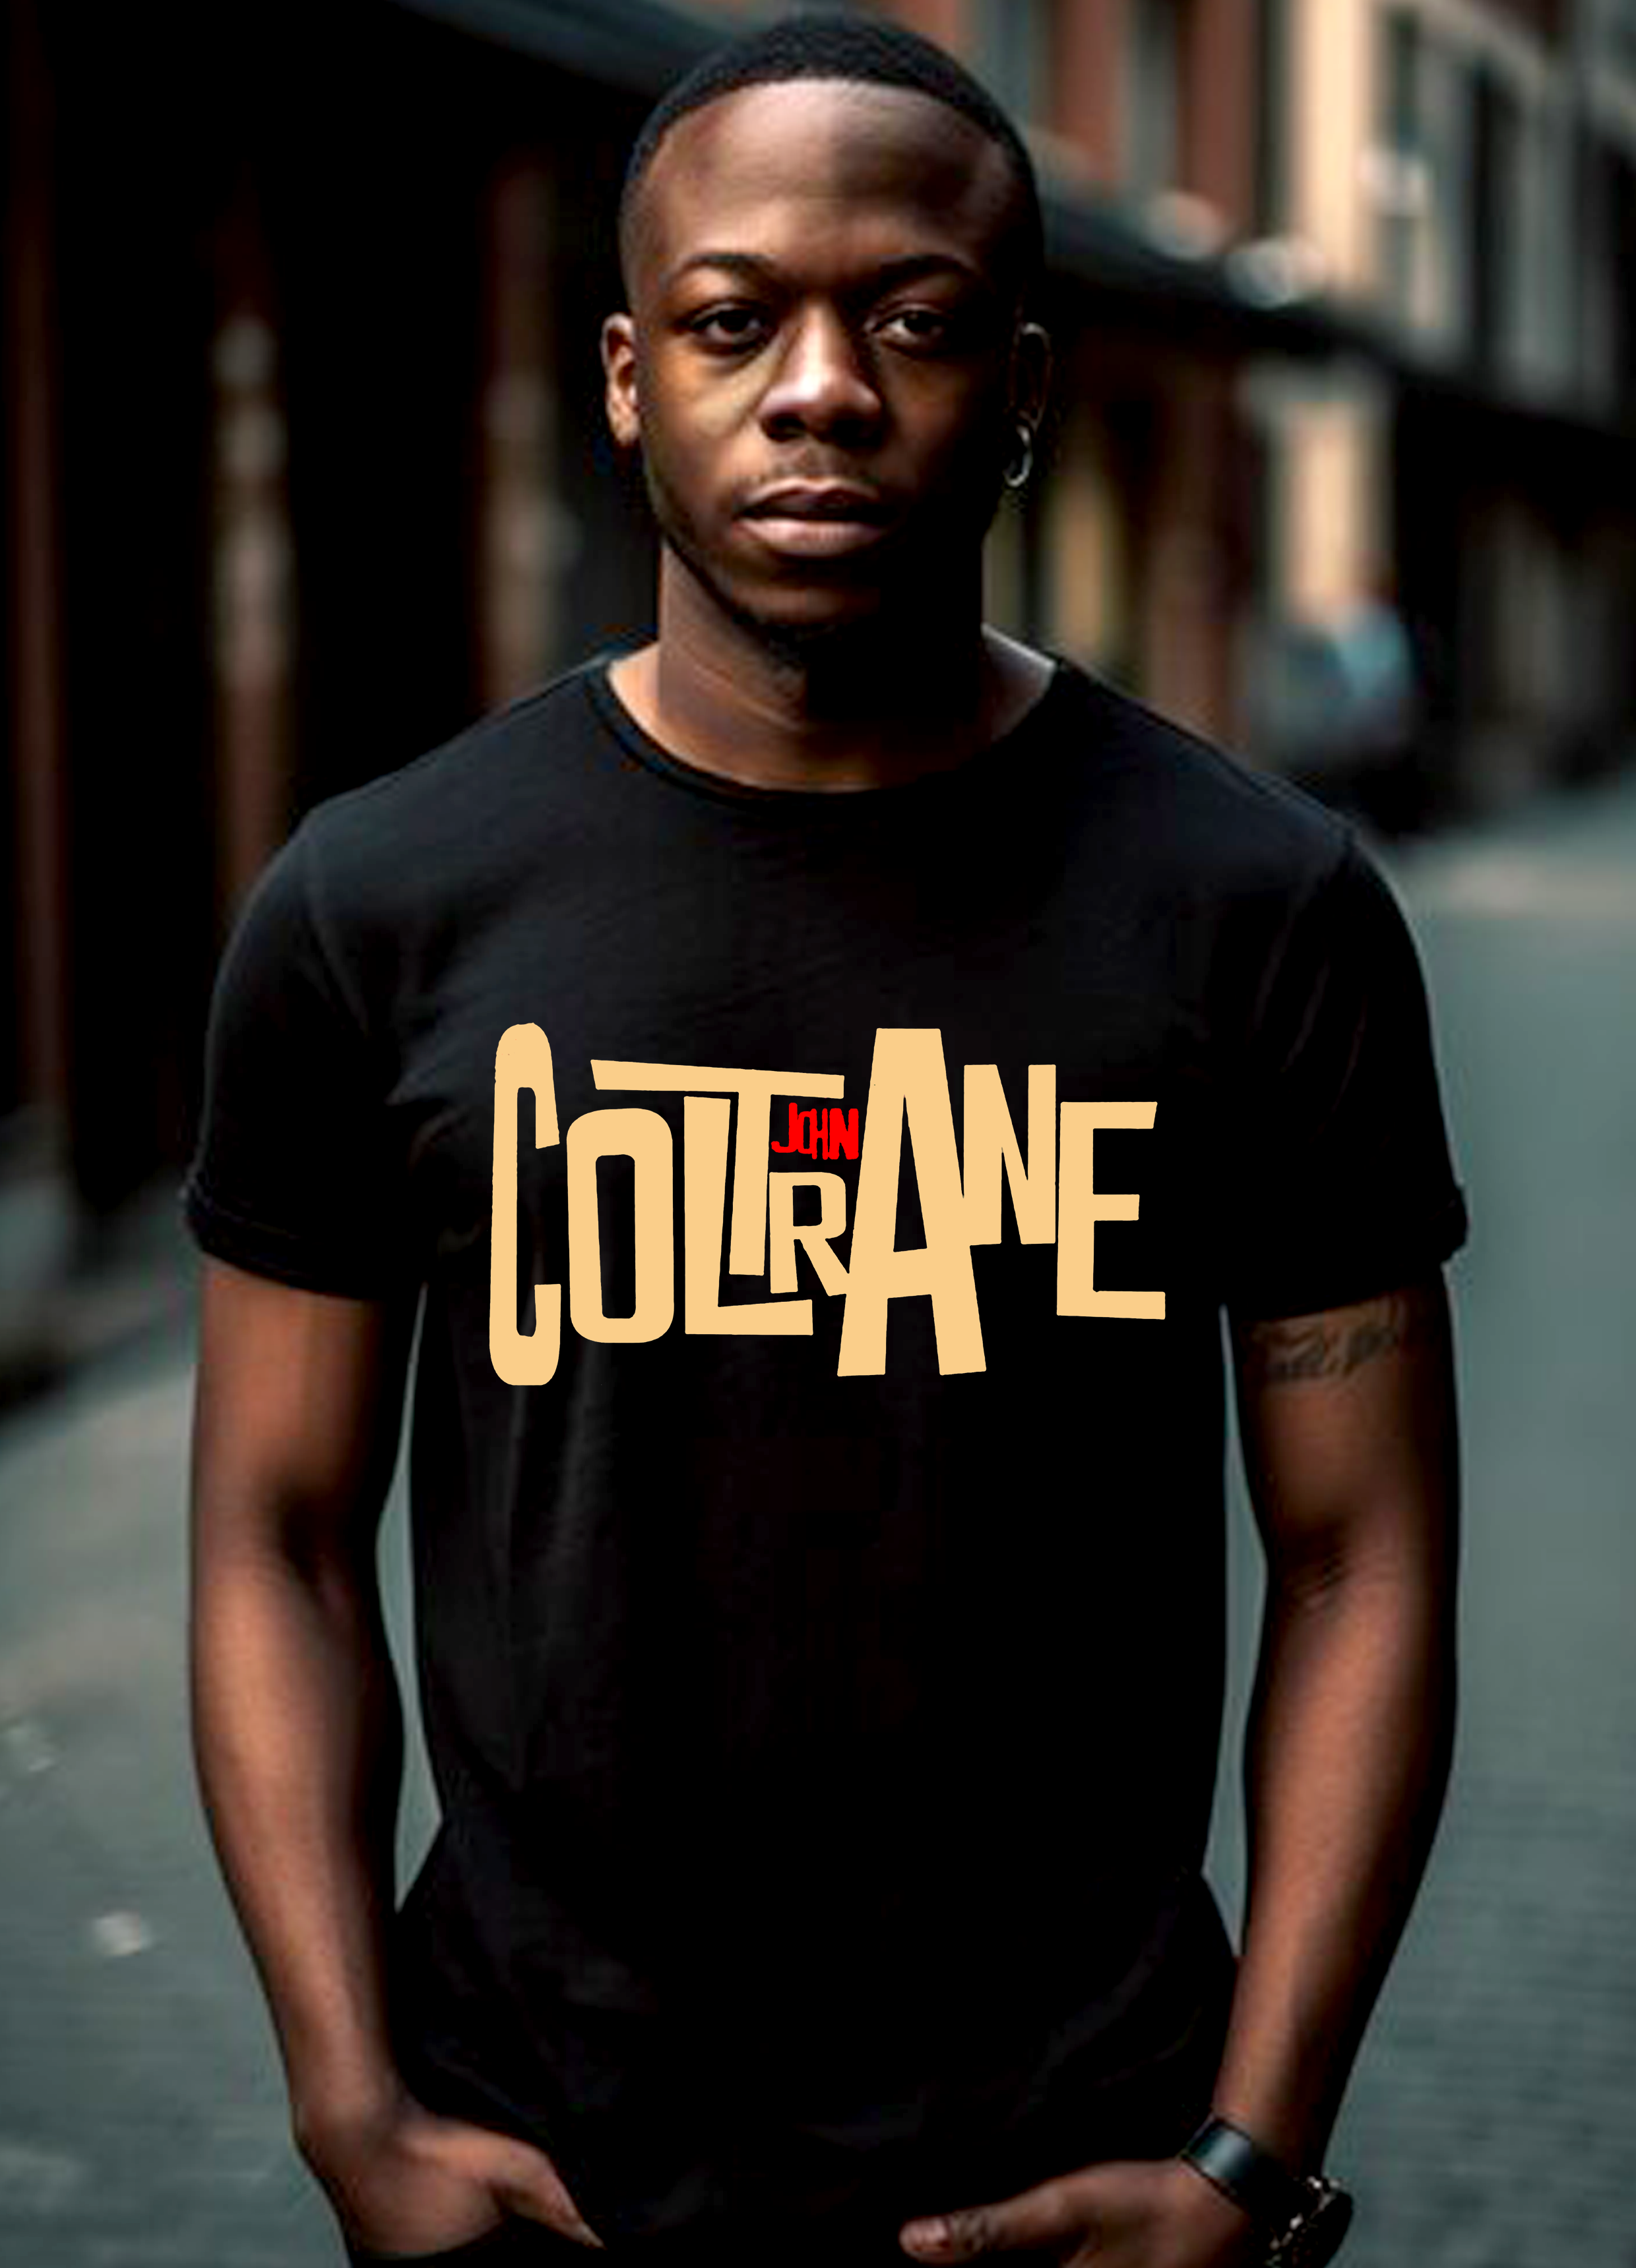 John Coltrane 02